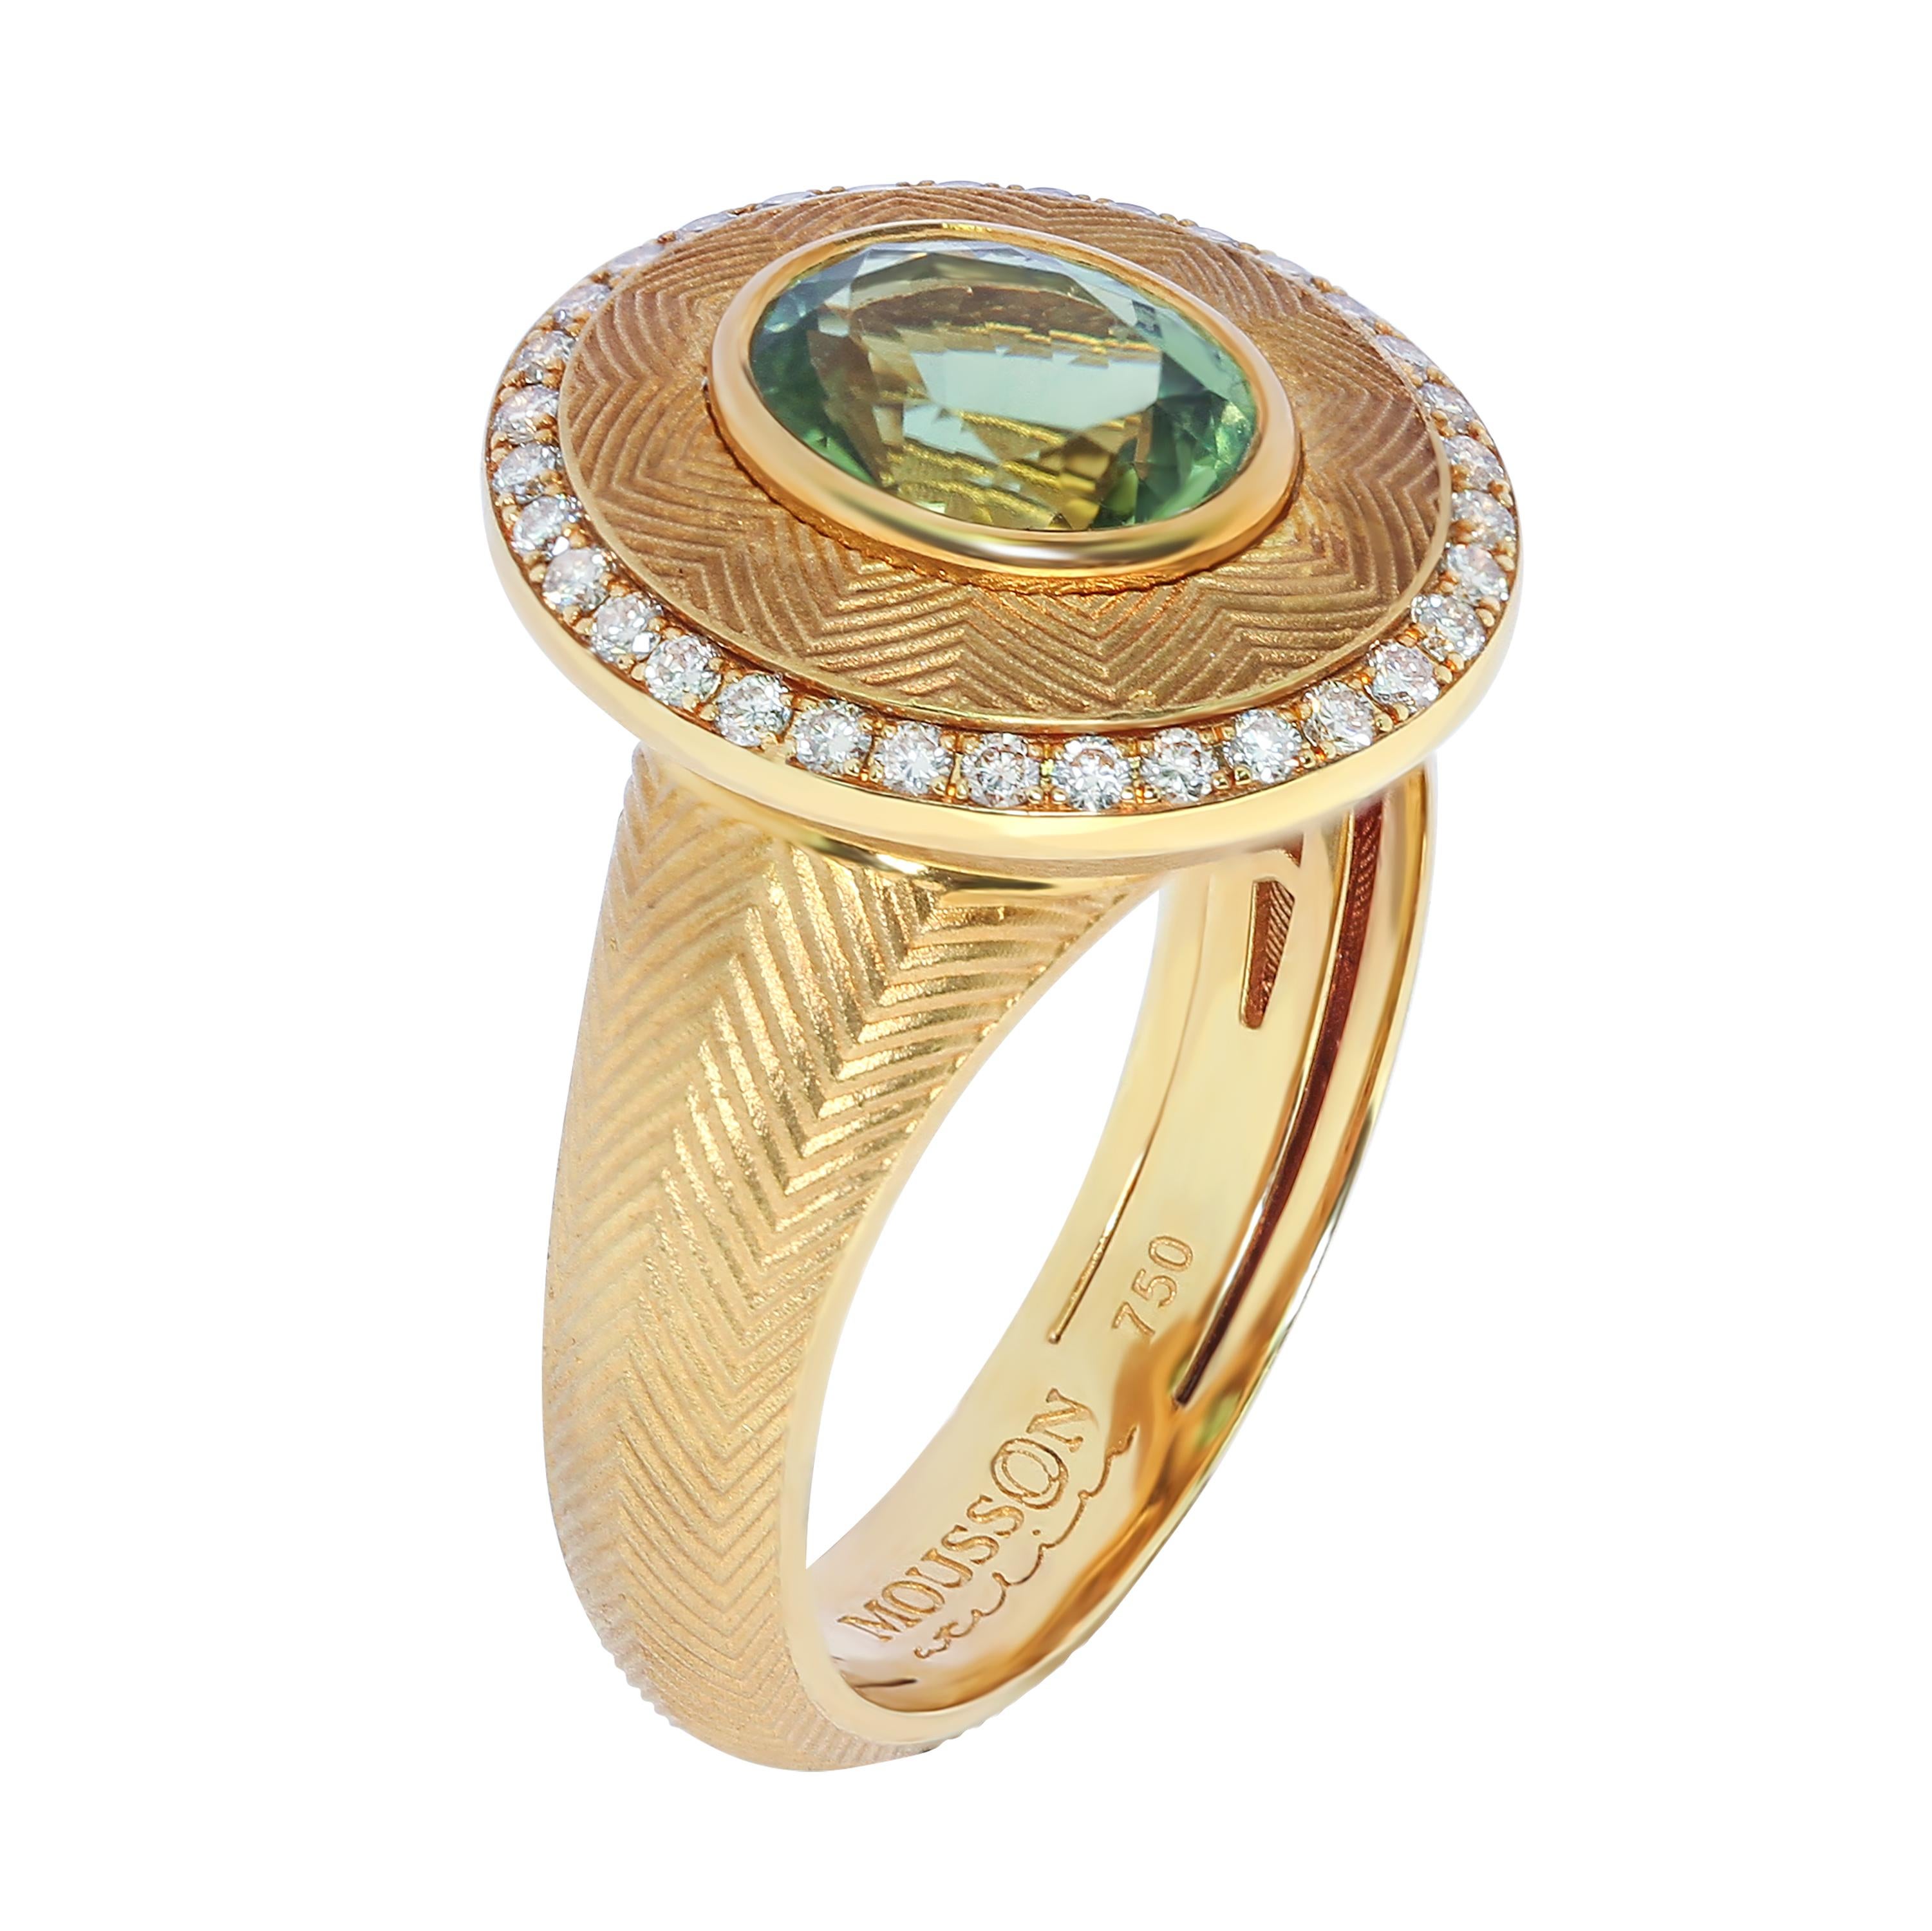 Grüner Turmalin 1,70 Karat Champagner Diamanten 18 Karat Gelbgold Tweed Ring
Unser Markenzeichen, die Textur 